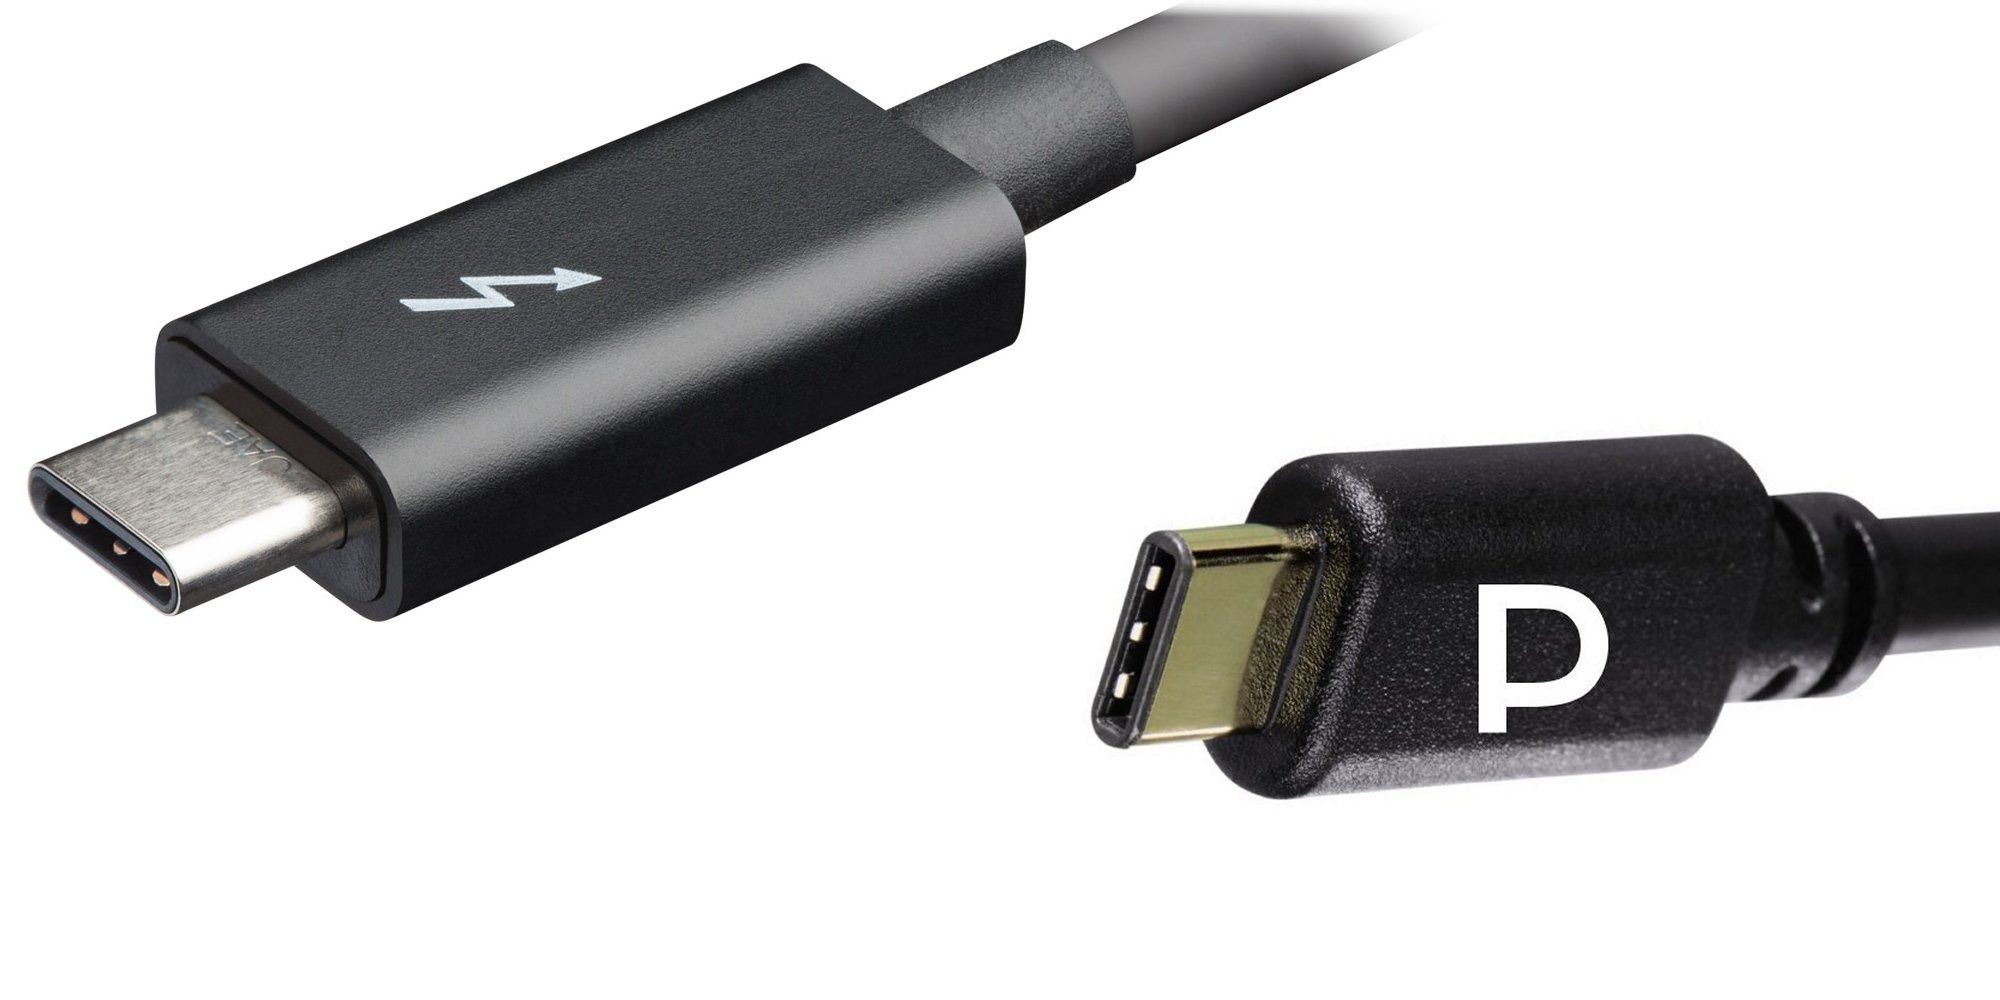 Thunderbolt (links) oder DisplayPort: USB C kennt auch Logos für zusätzliche Protokolle für die parallel Audio- und Videoübertragung.